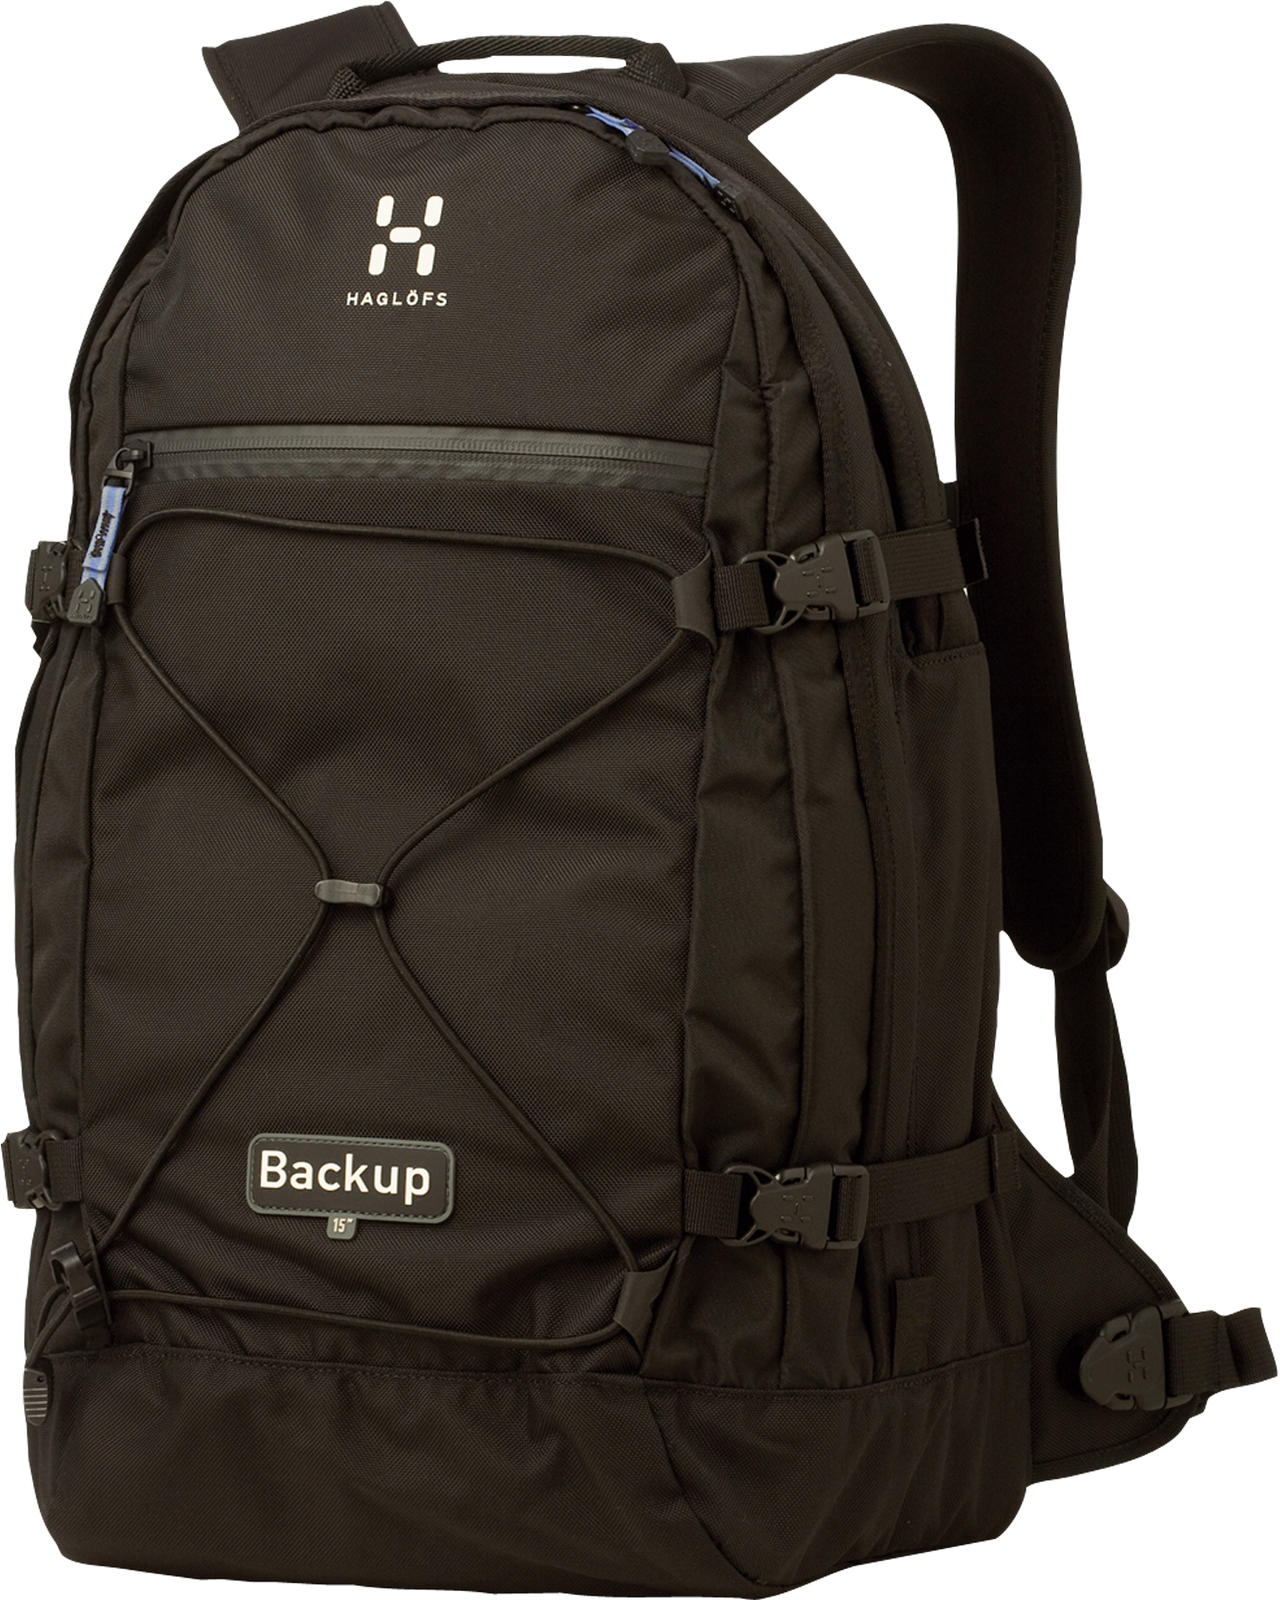 Backpack PNG Transparent Imag